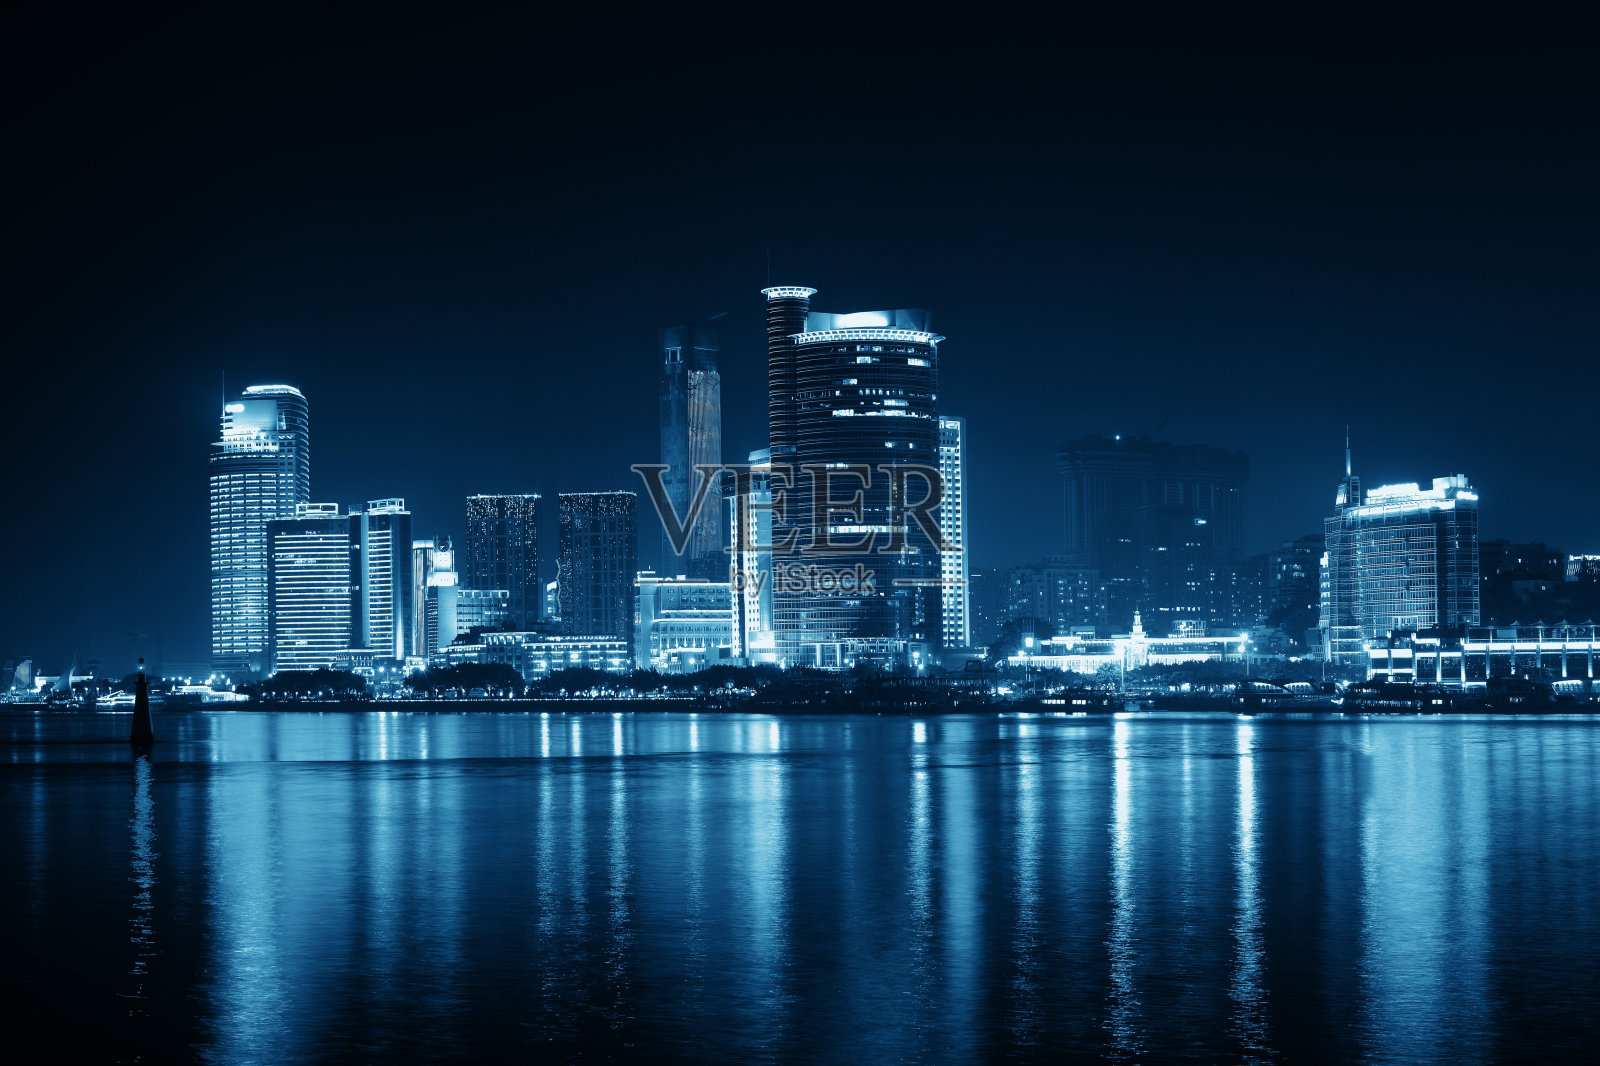 厦门城楼夜景照片摄影图片